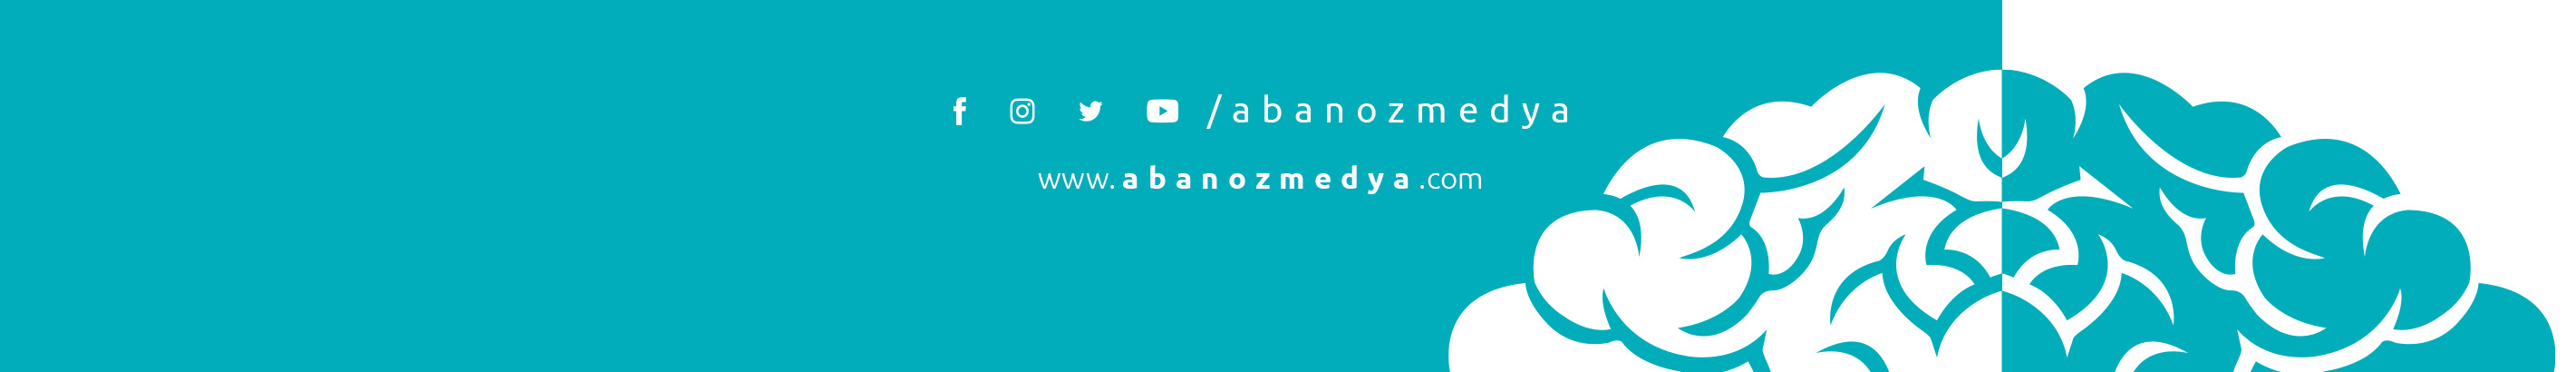 Abanoz Medya's profile banner